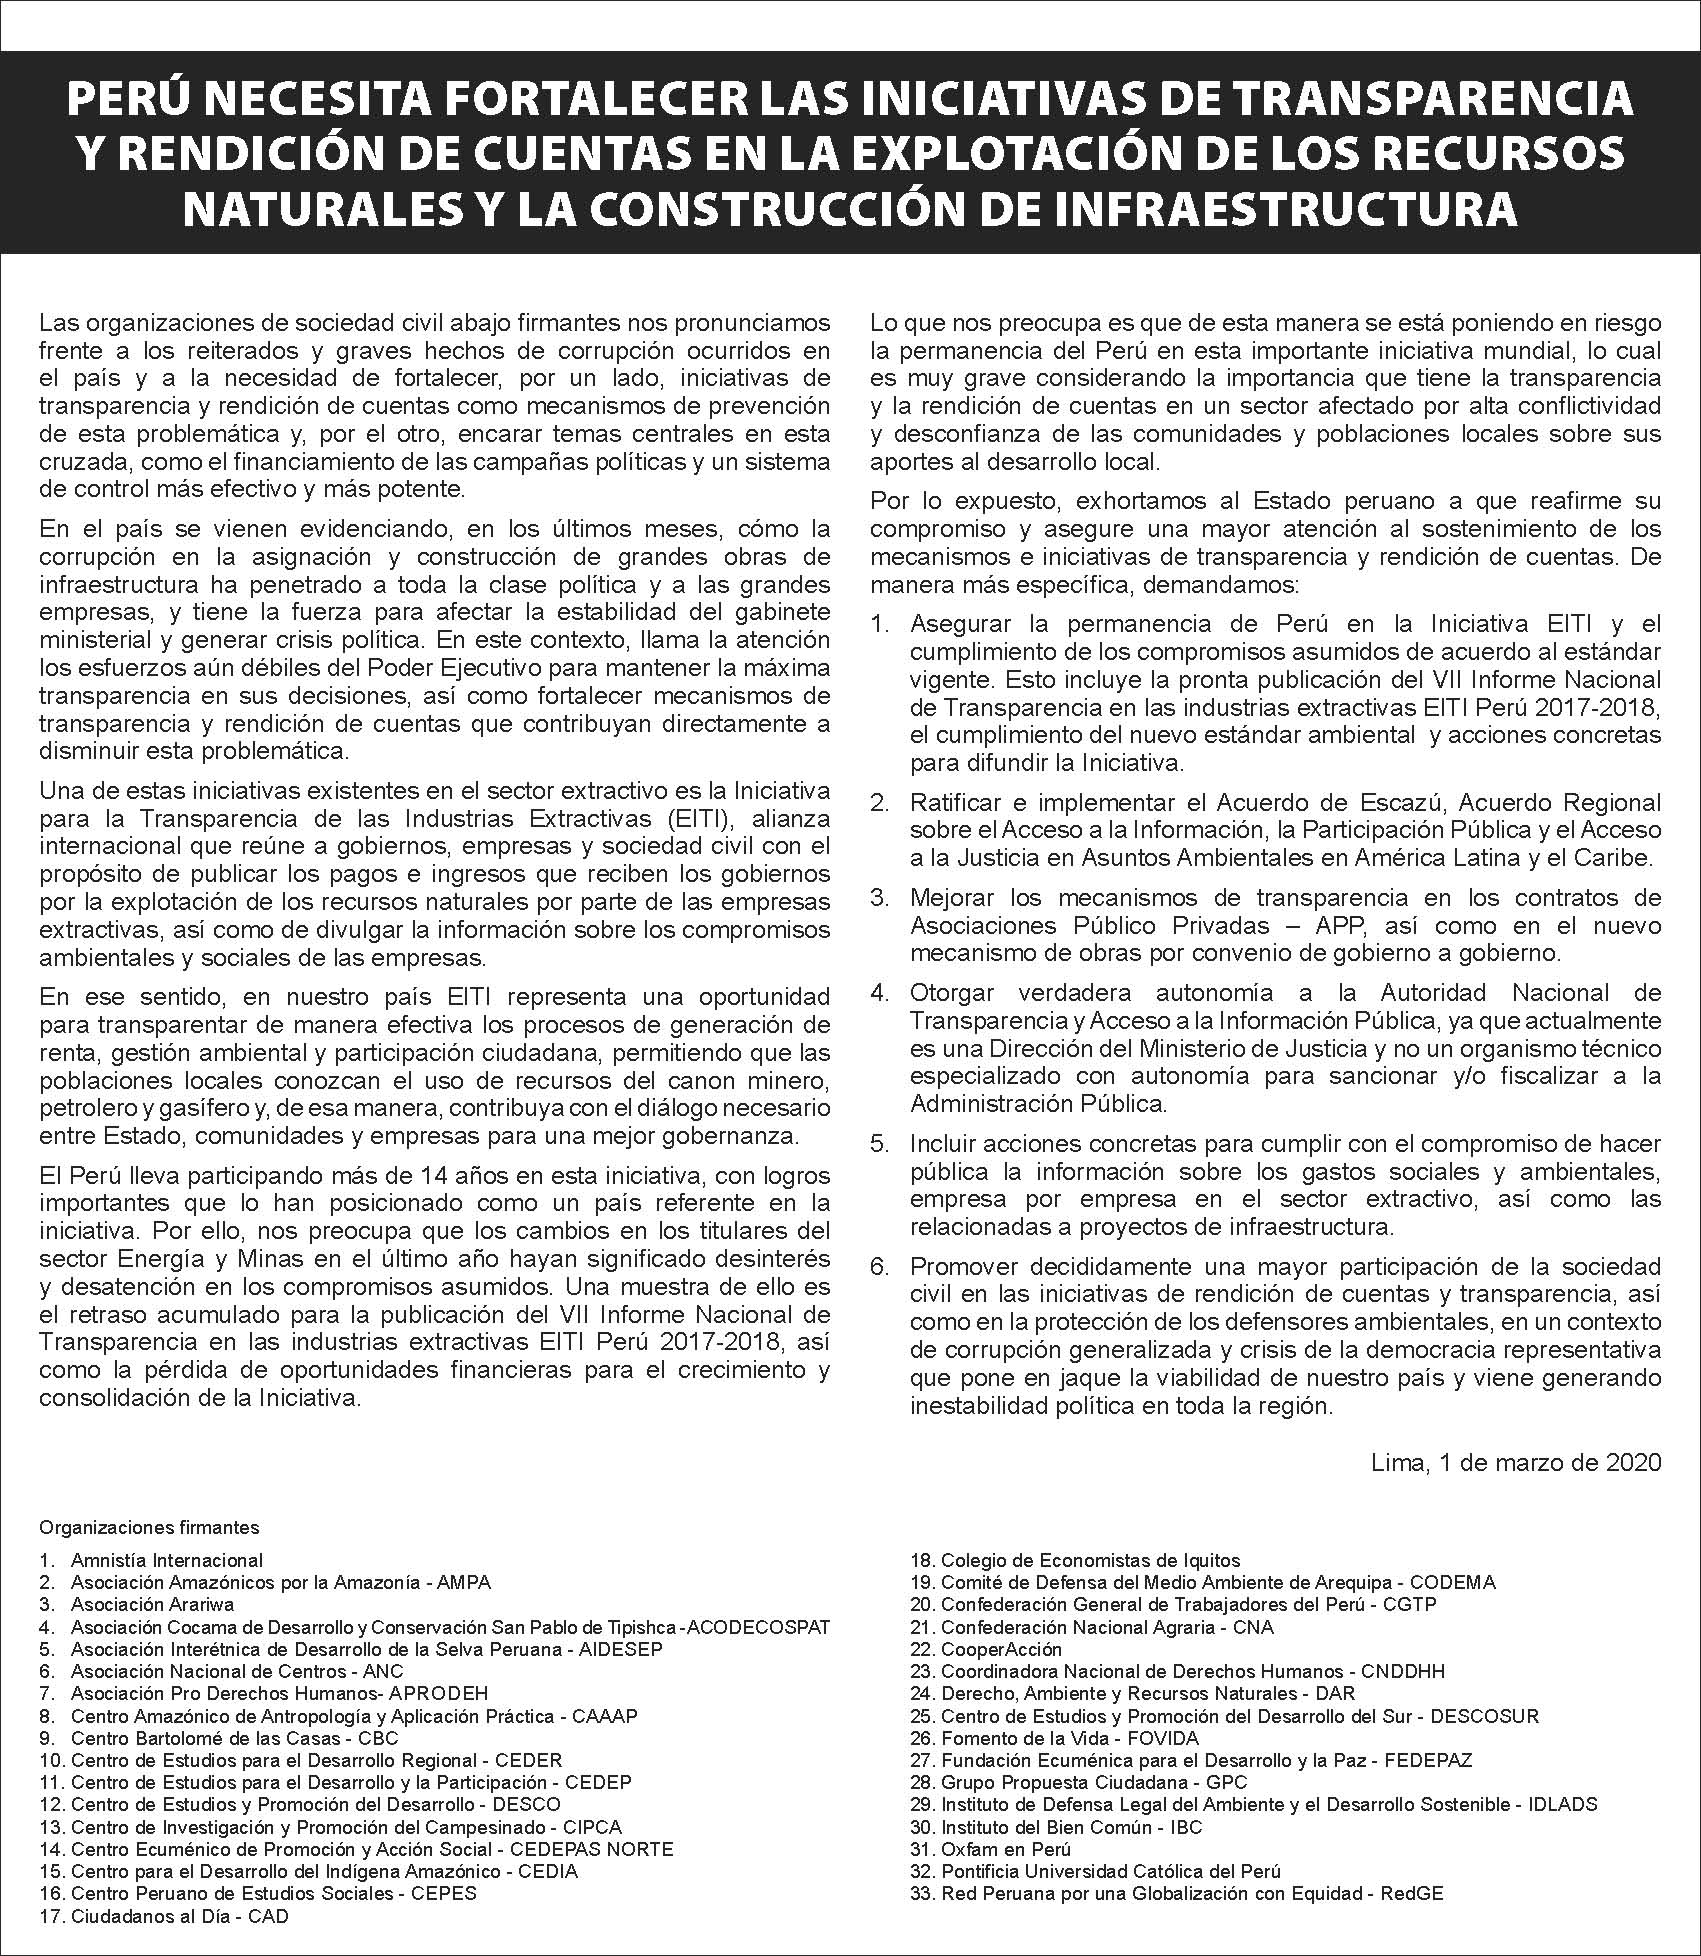 PRONUNCIAMIENTO: Perú necesita fortalecer las iniciativas de transparencia y rendición de cuentas en la explotación de los recursos naturales y la construcción de infraestructura